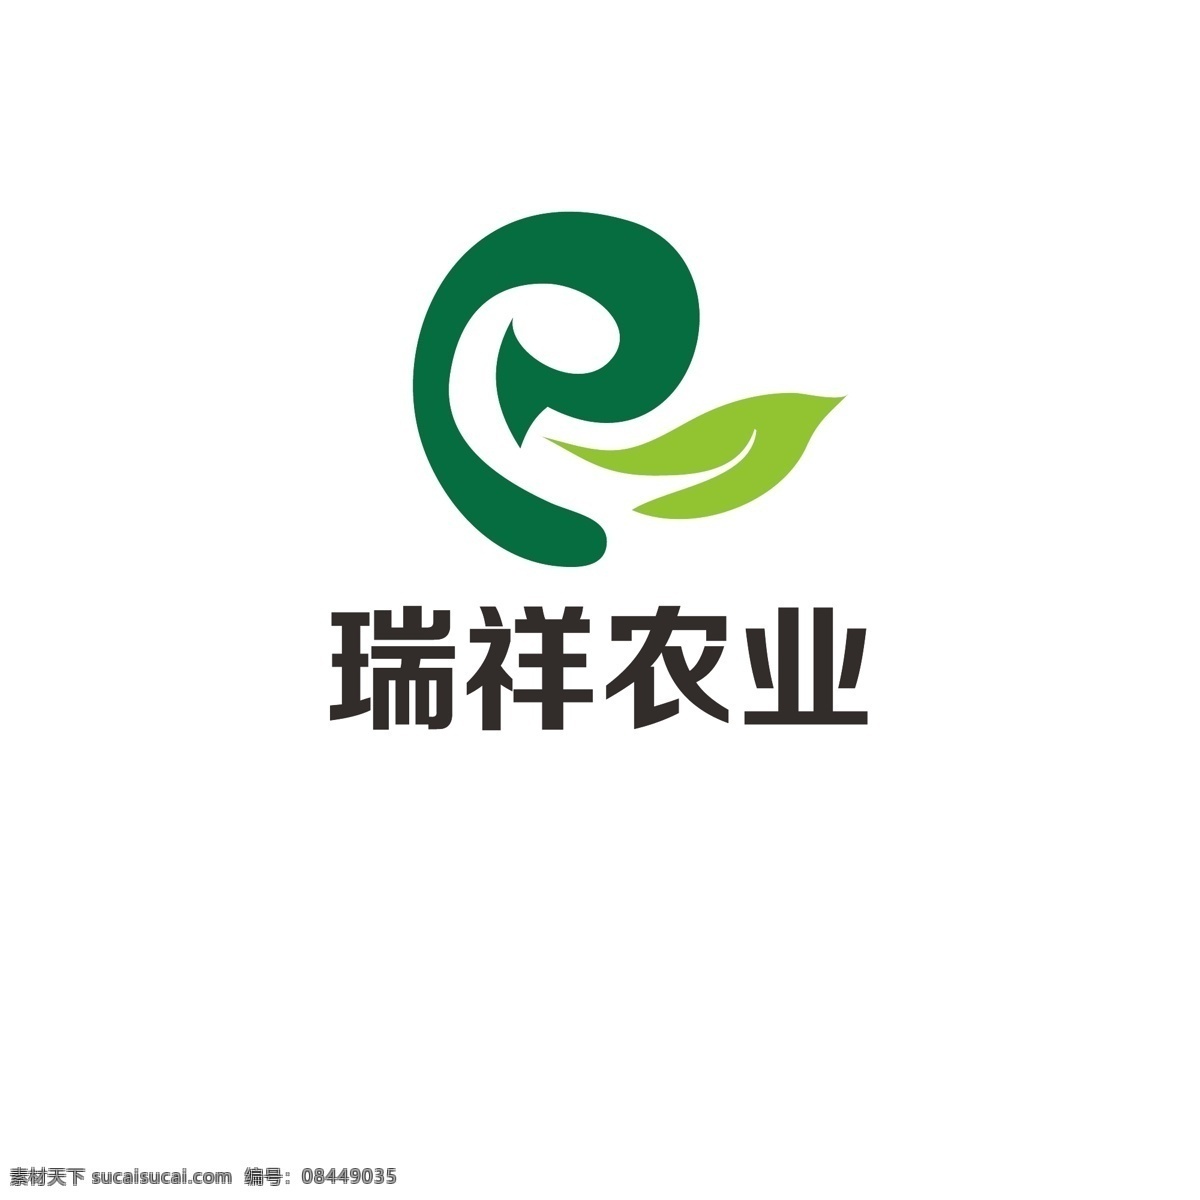 生态农业 logo 农业 发展 叶子 绿色 健康 生态 字母r